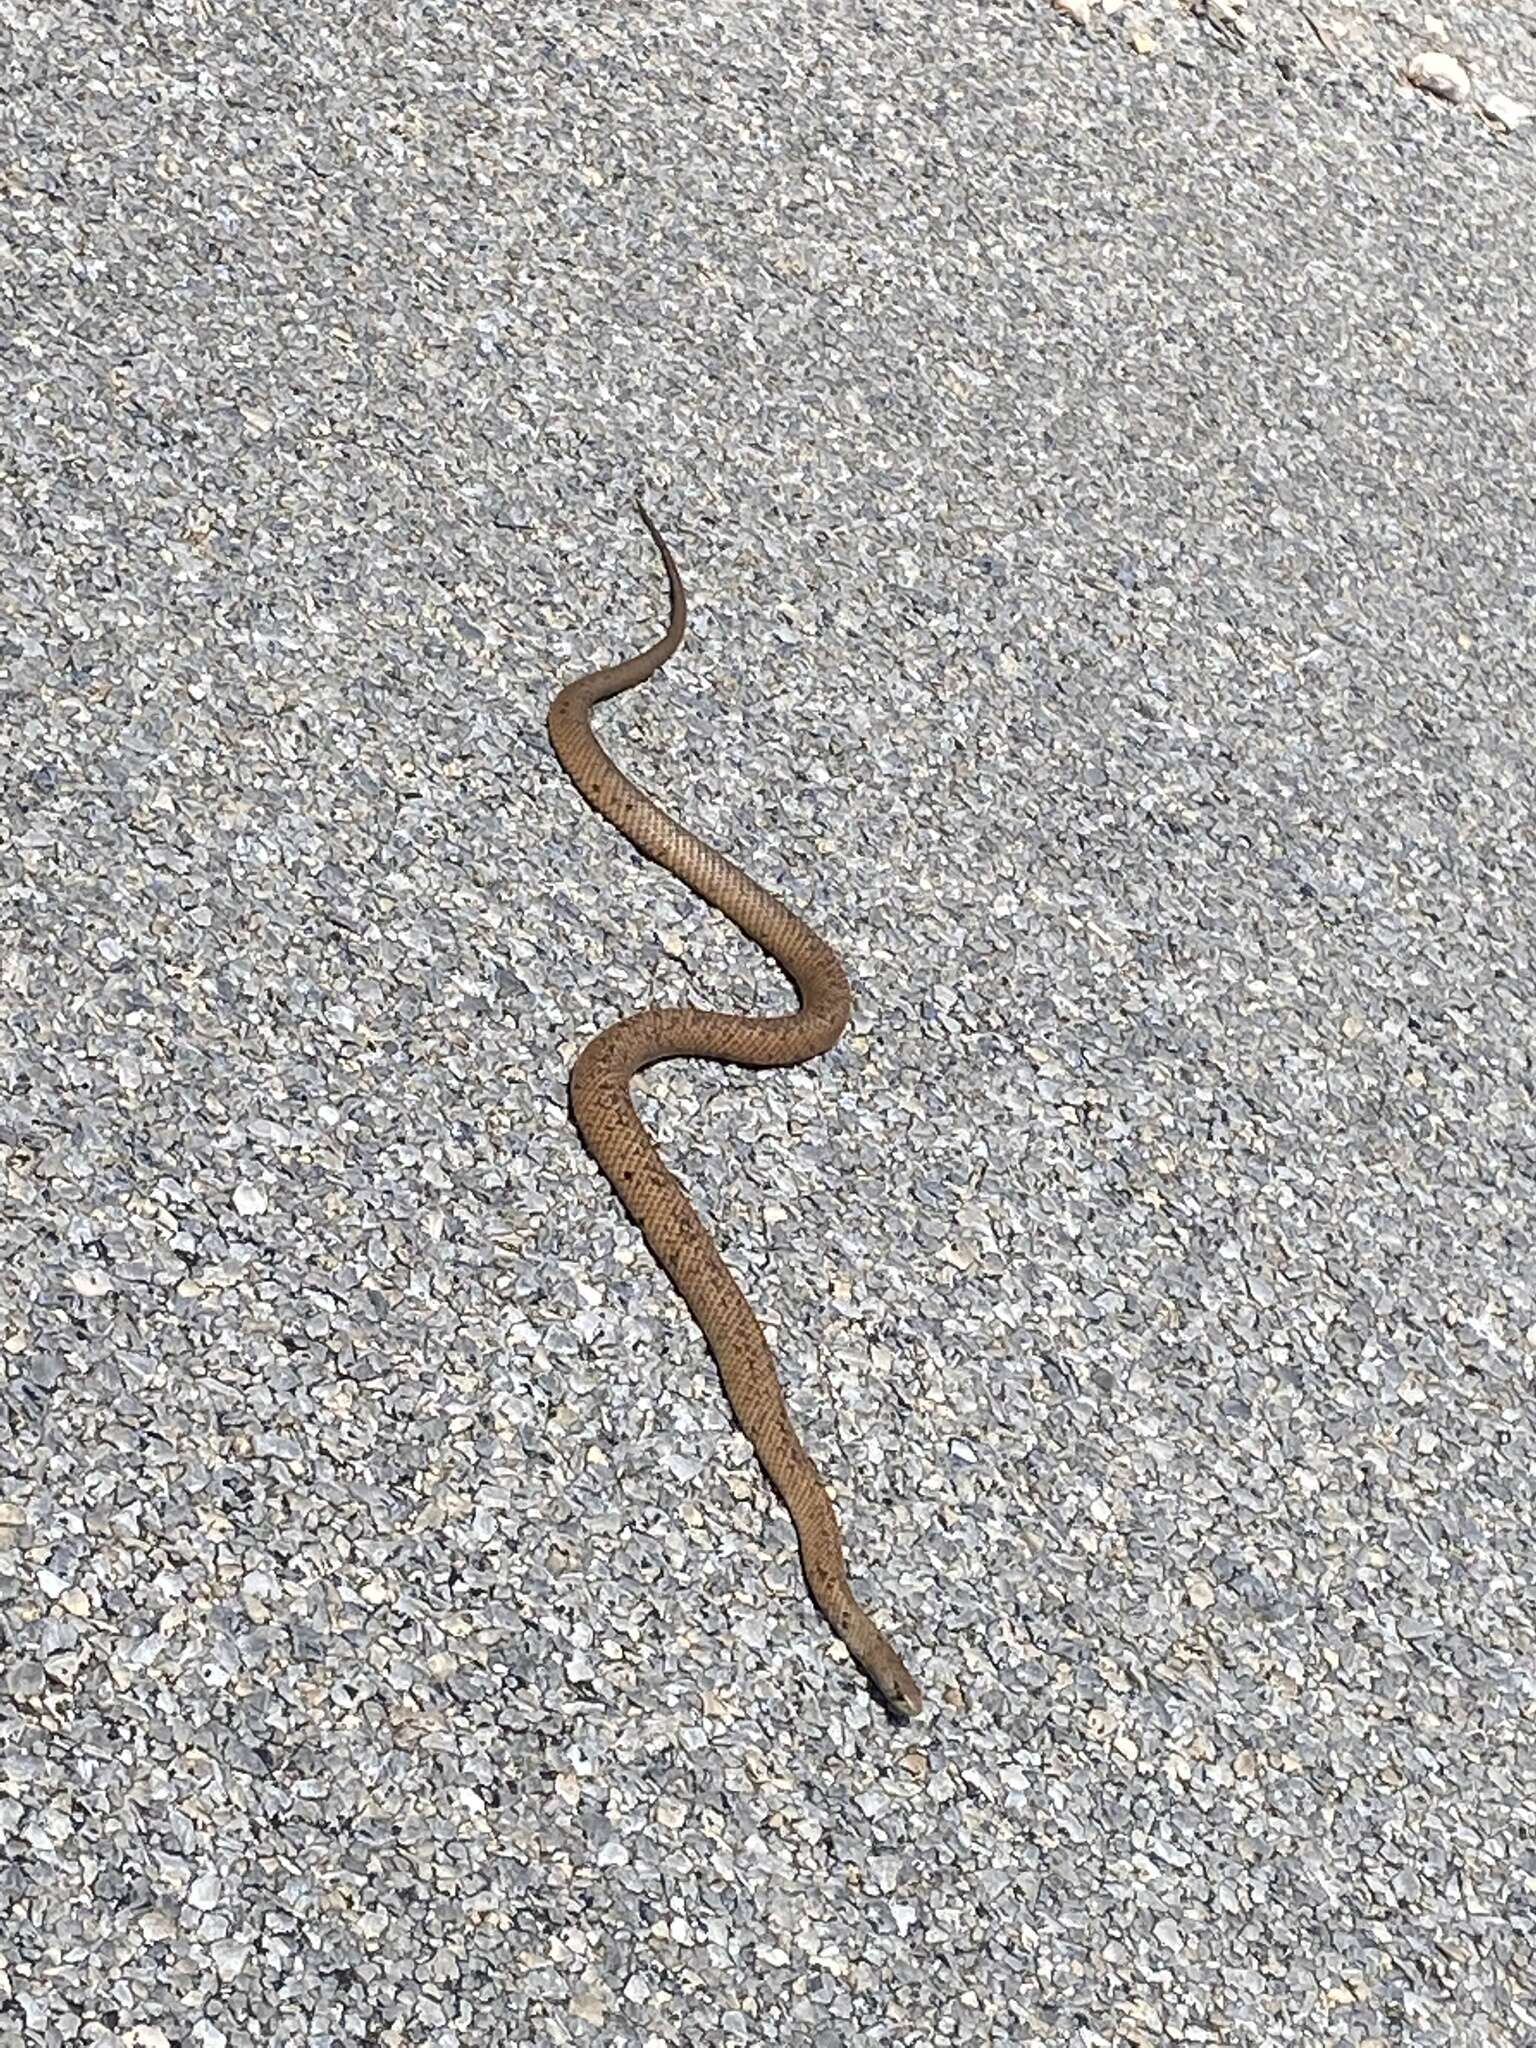 Image of Peninsula Brown Snake